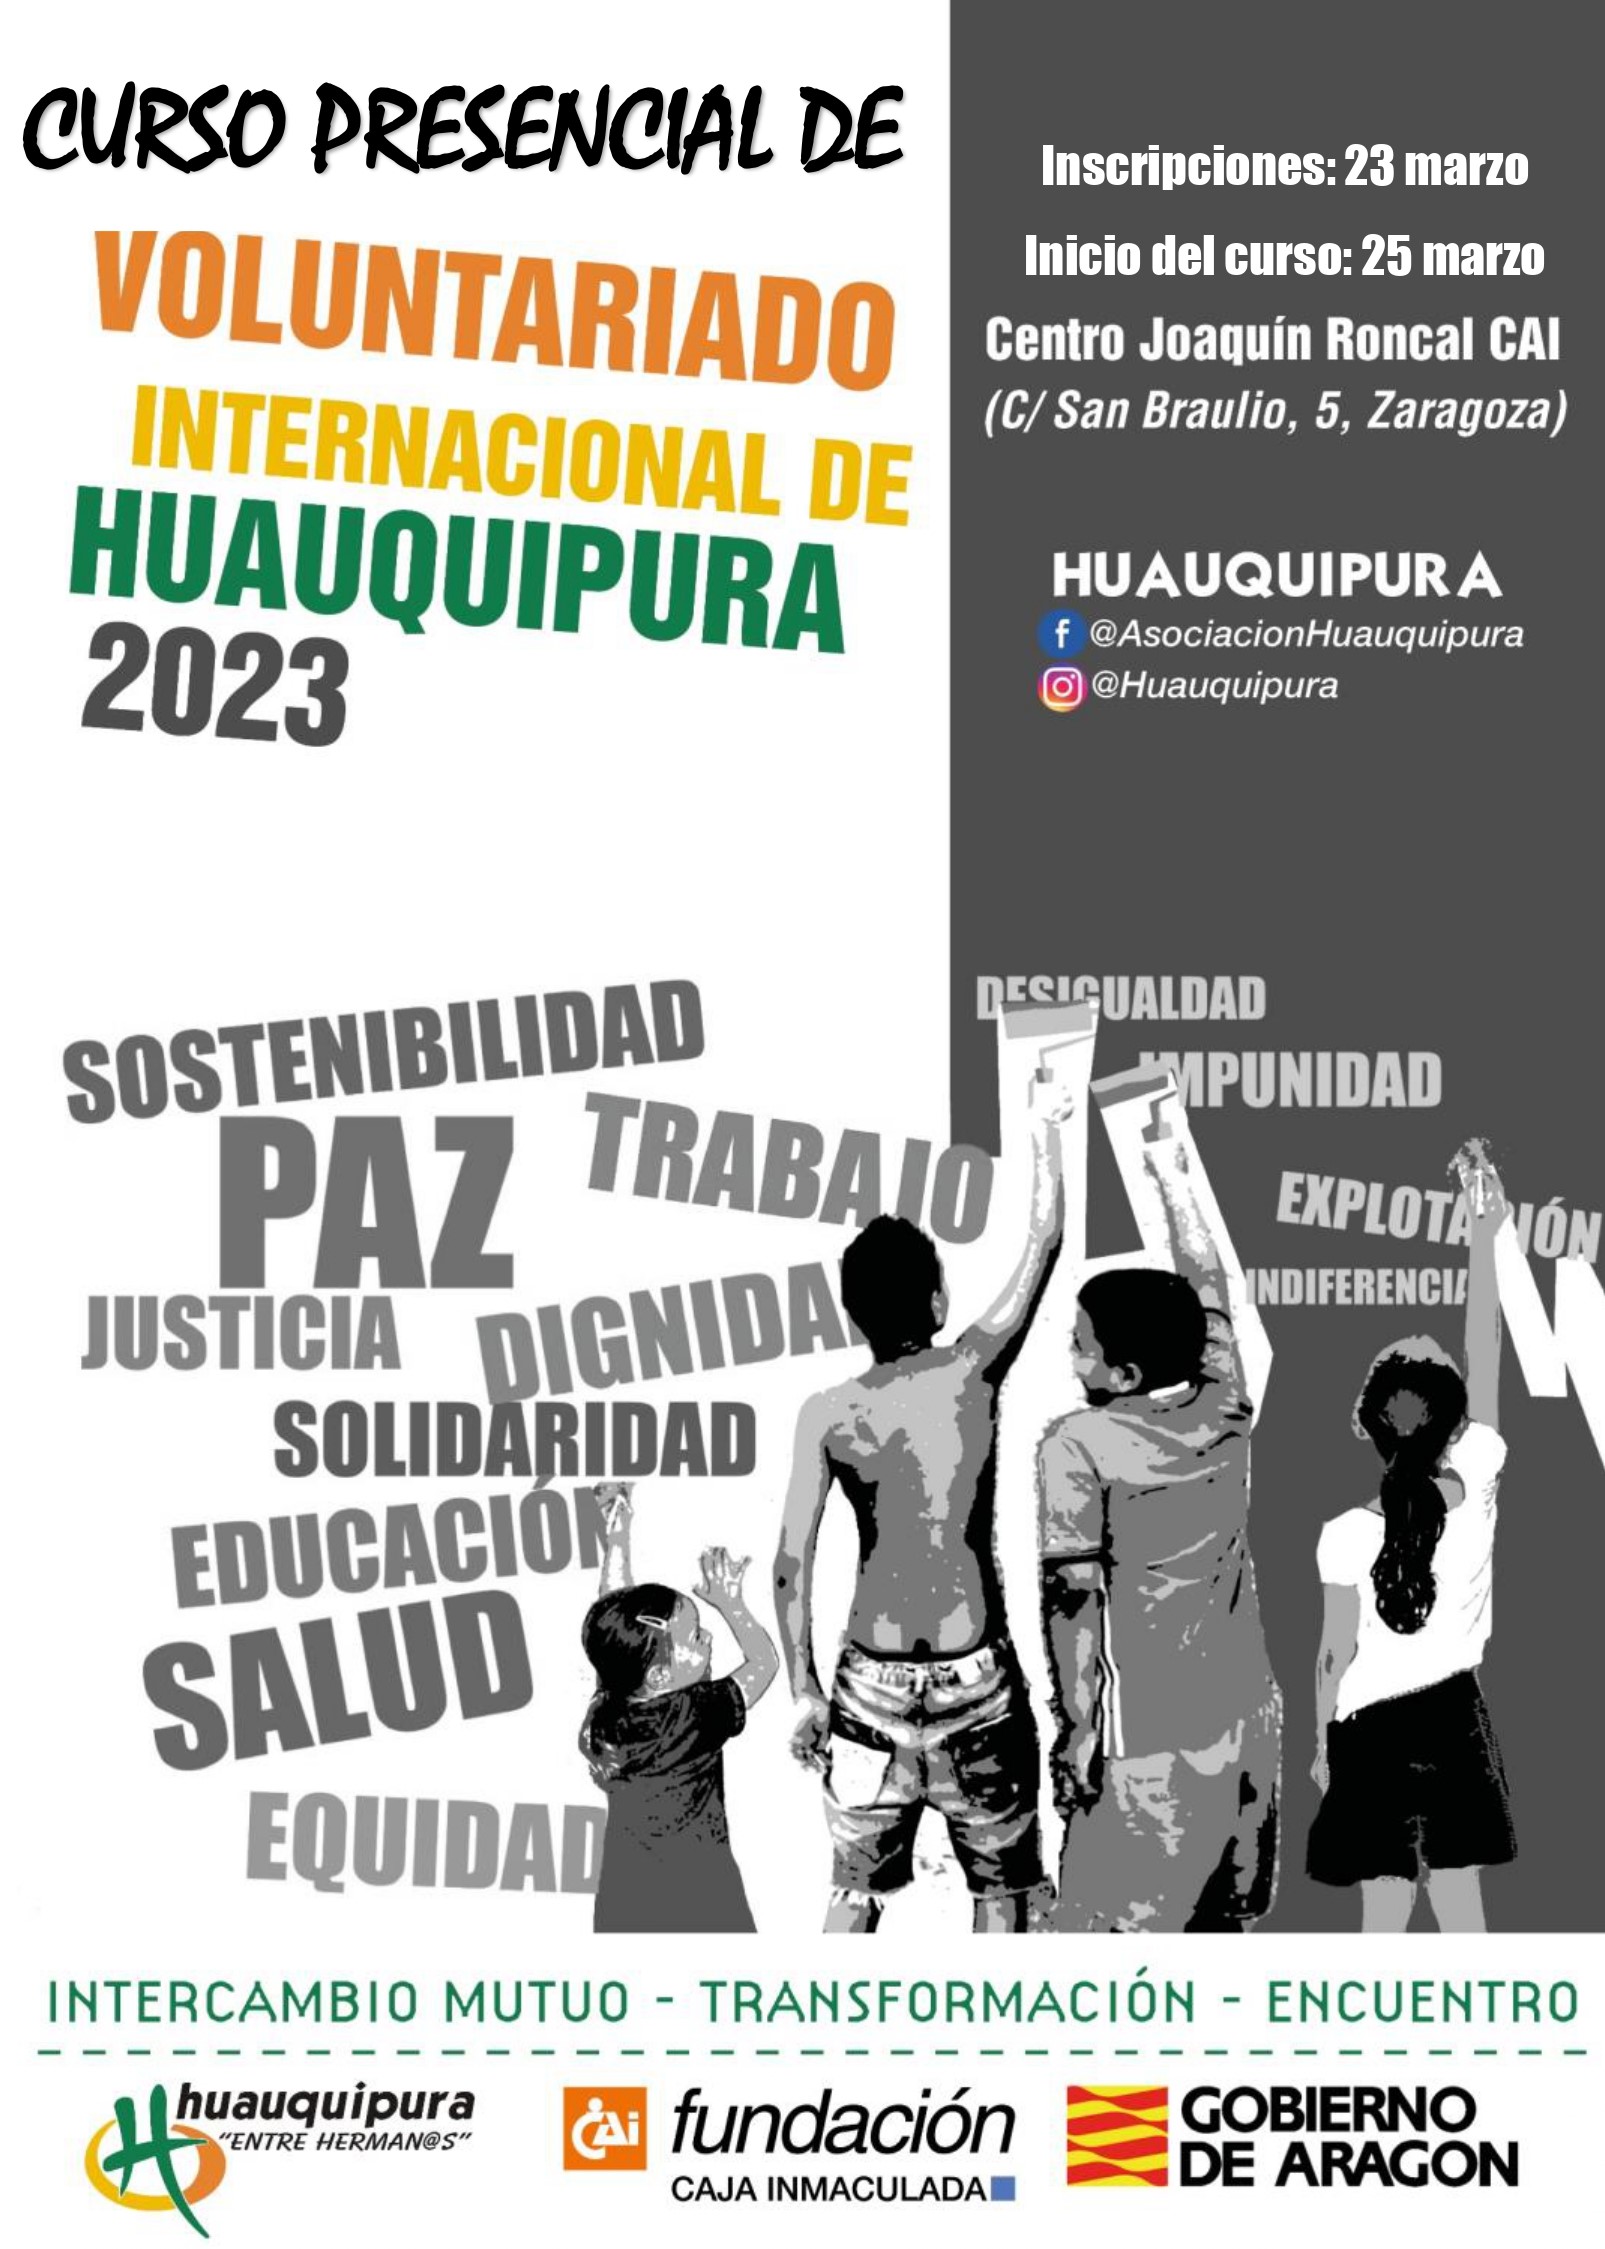 Curso de Voluntariado Internacional 2023 de Huauquipura